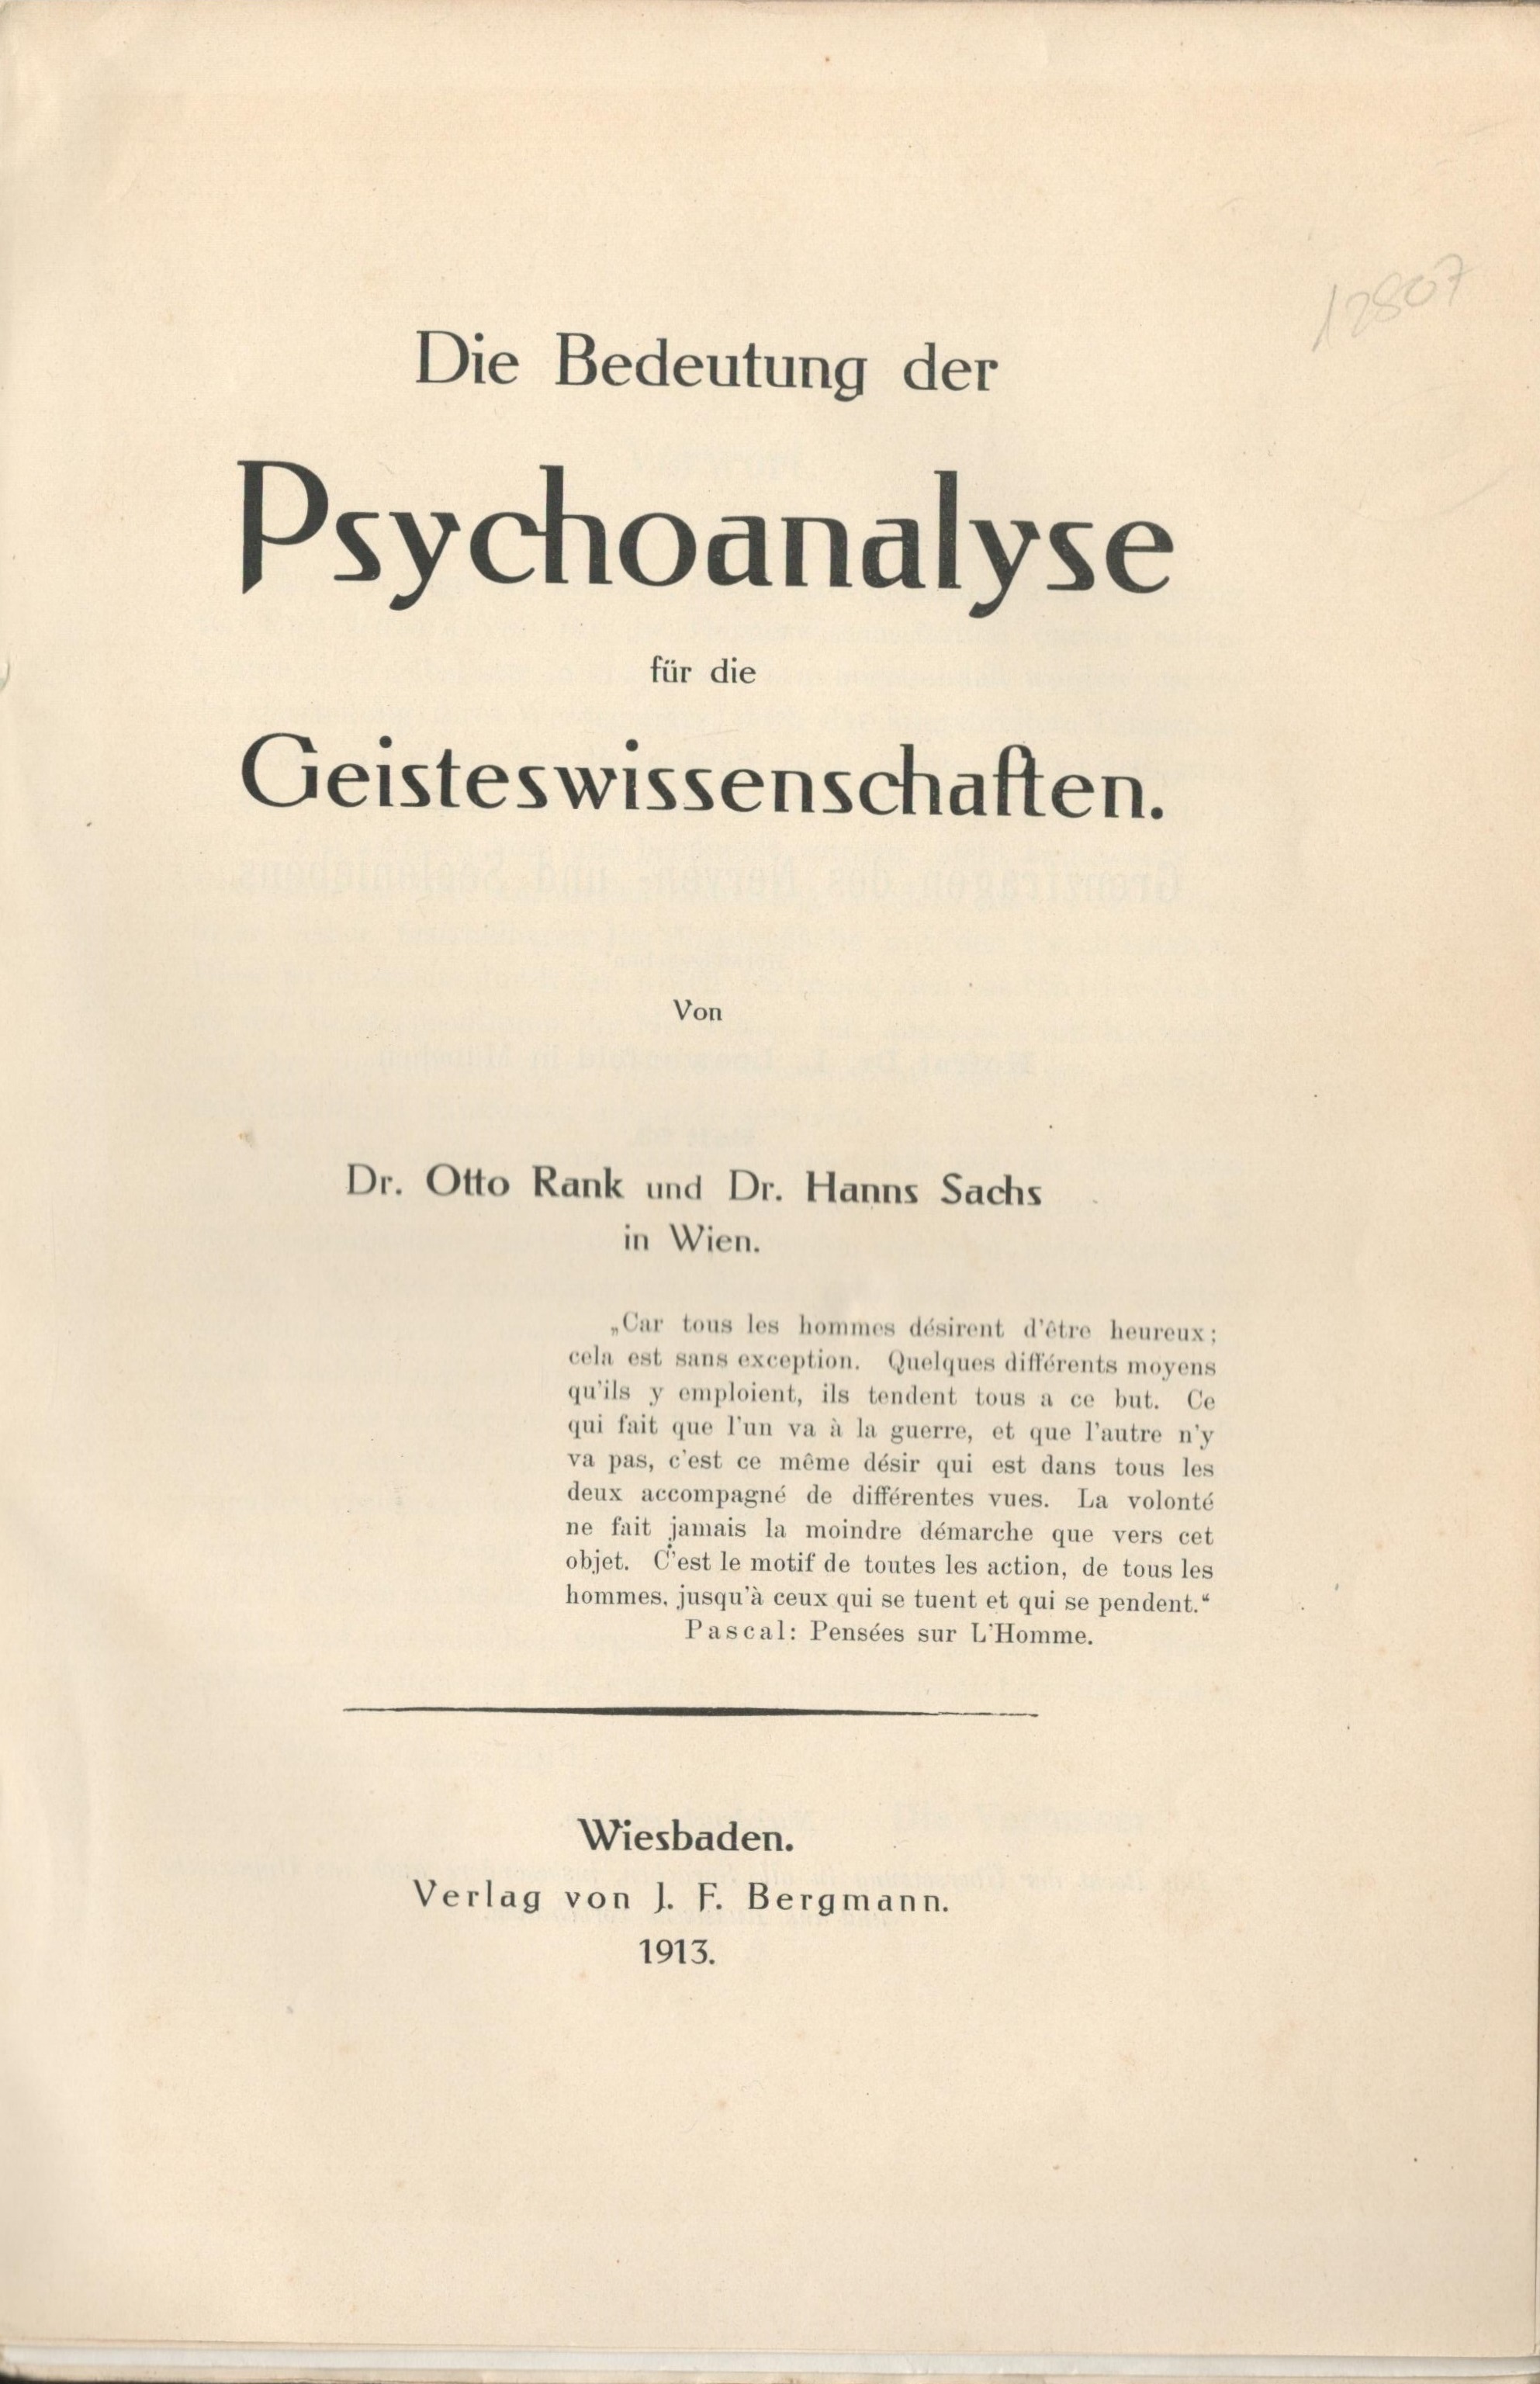 Die Bedeutung der Psychoanalyse - Titelblatt